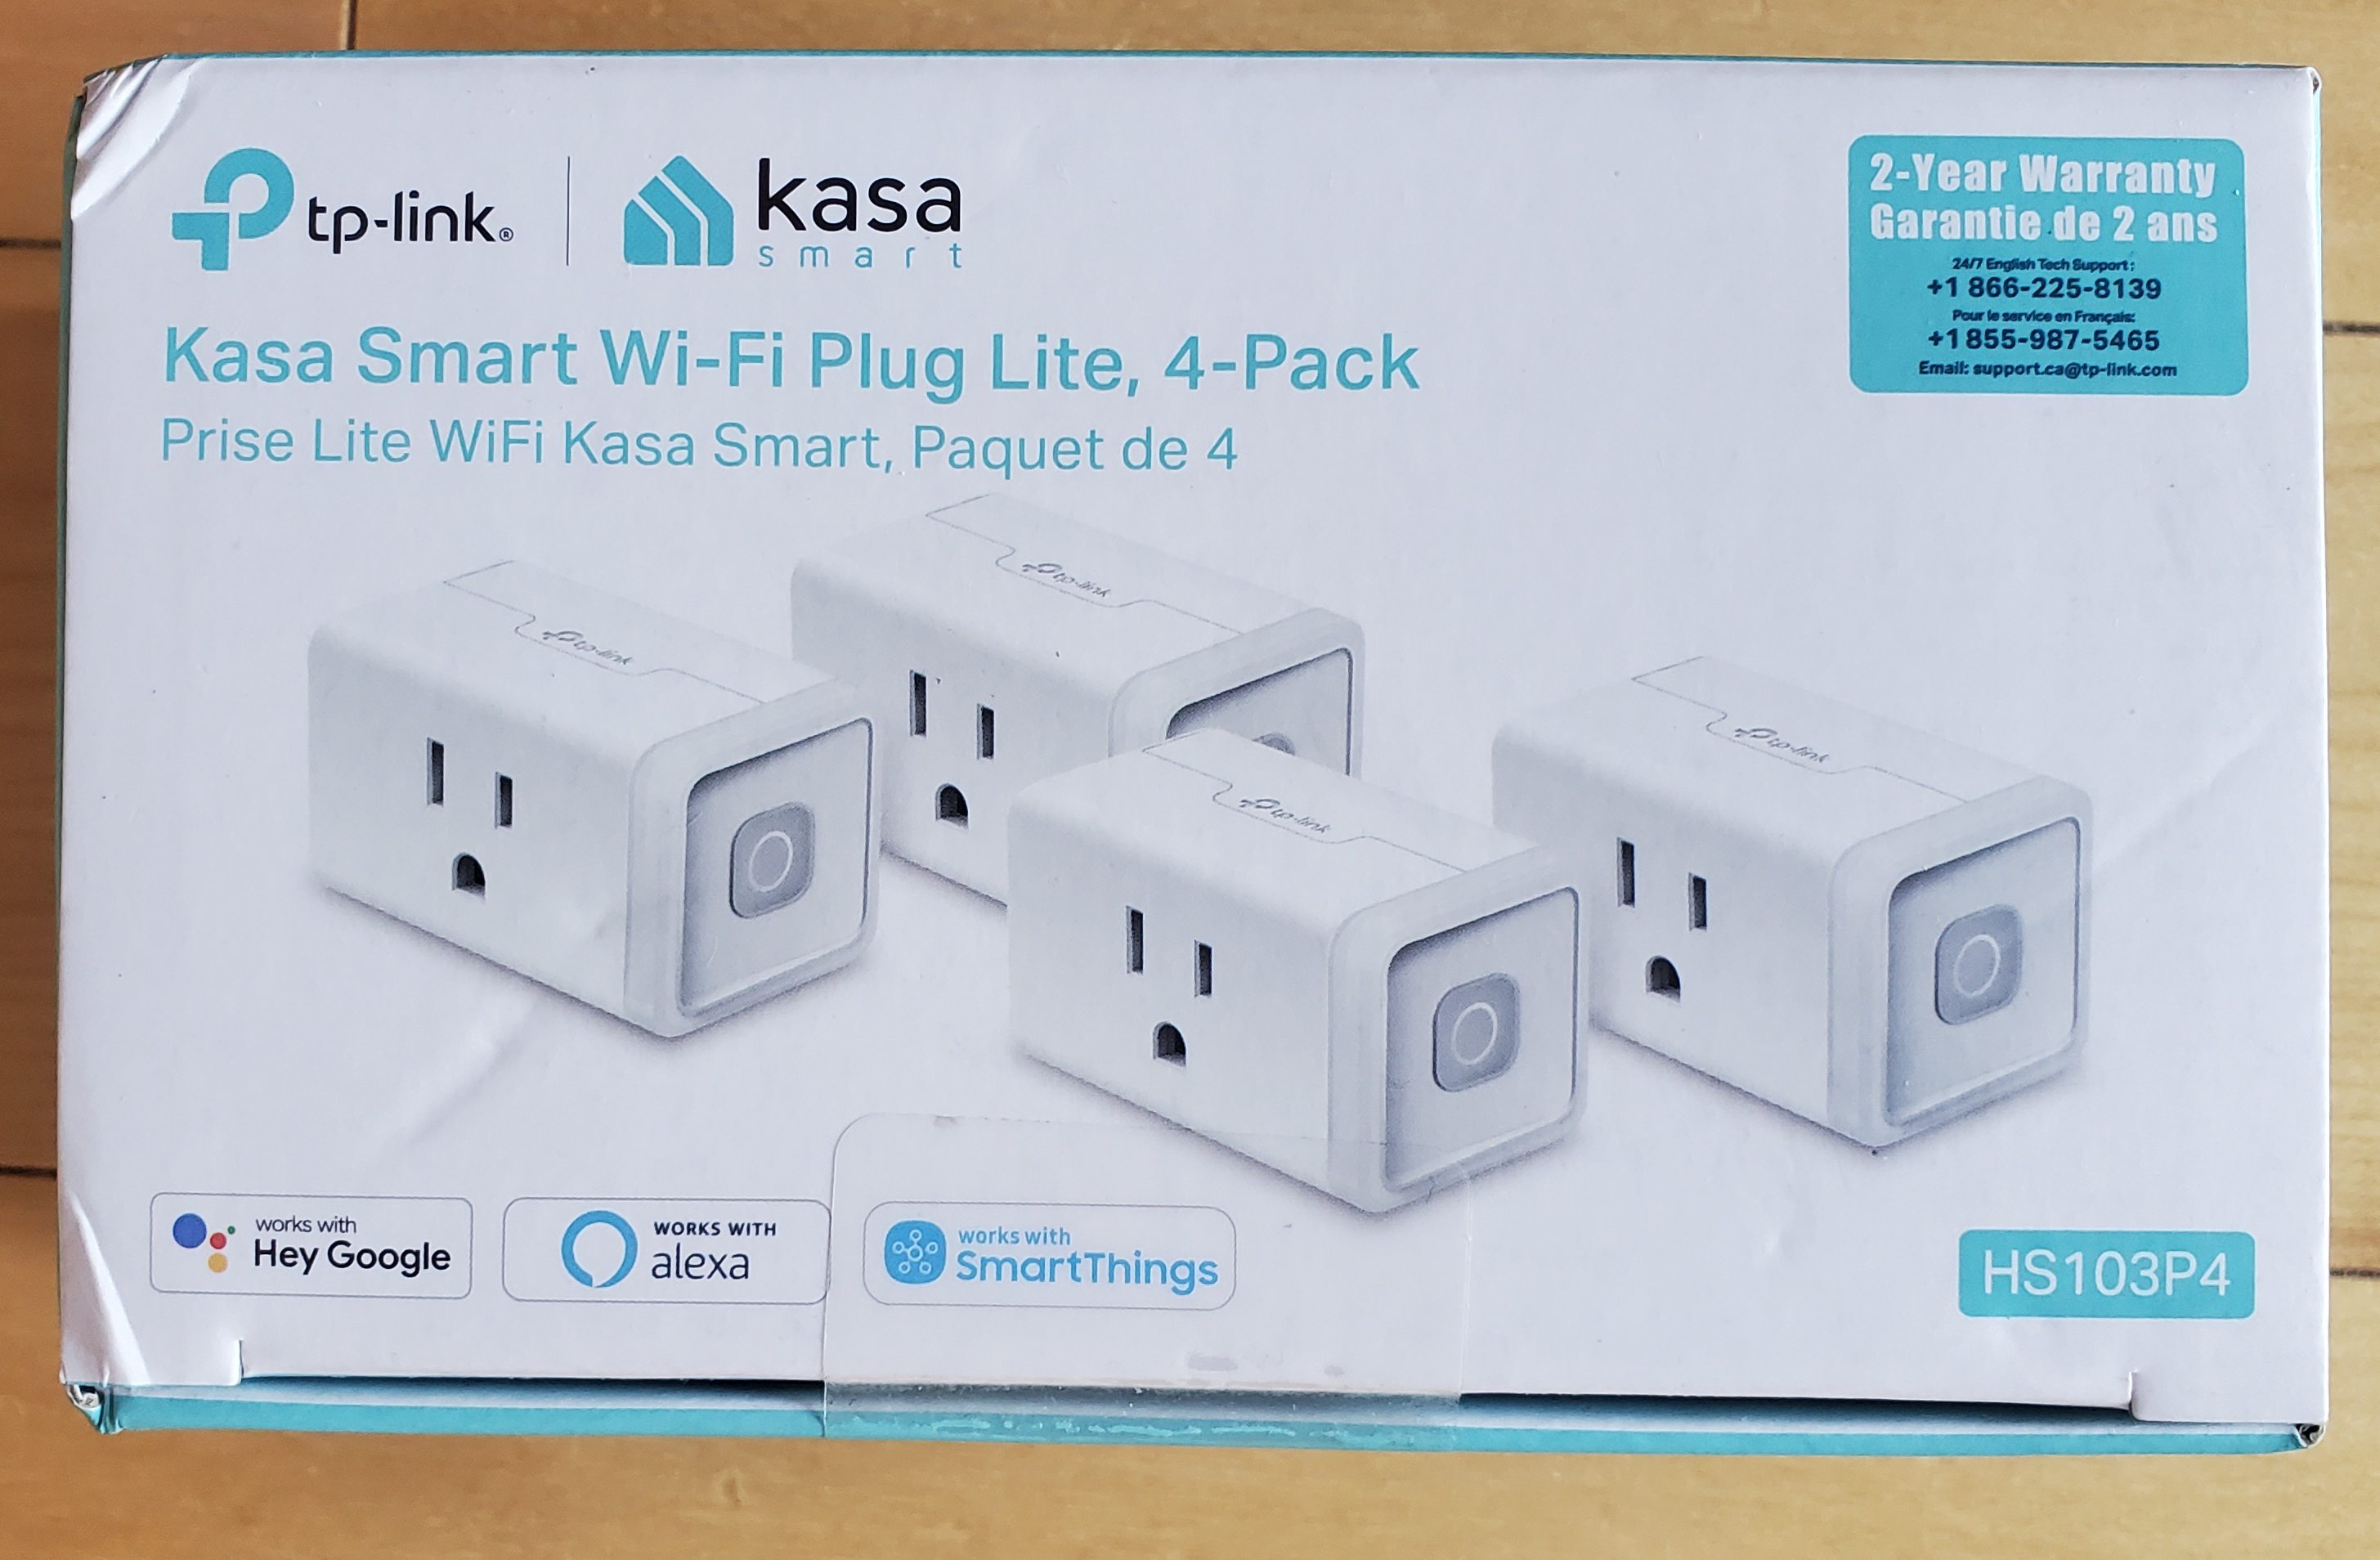 kasa smart plug says local only